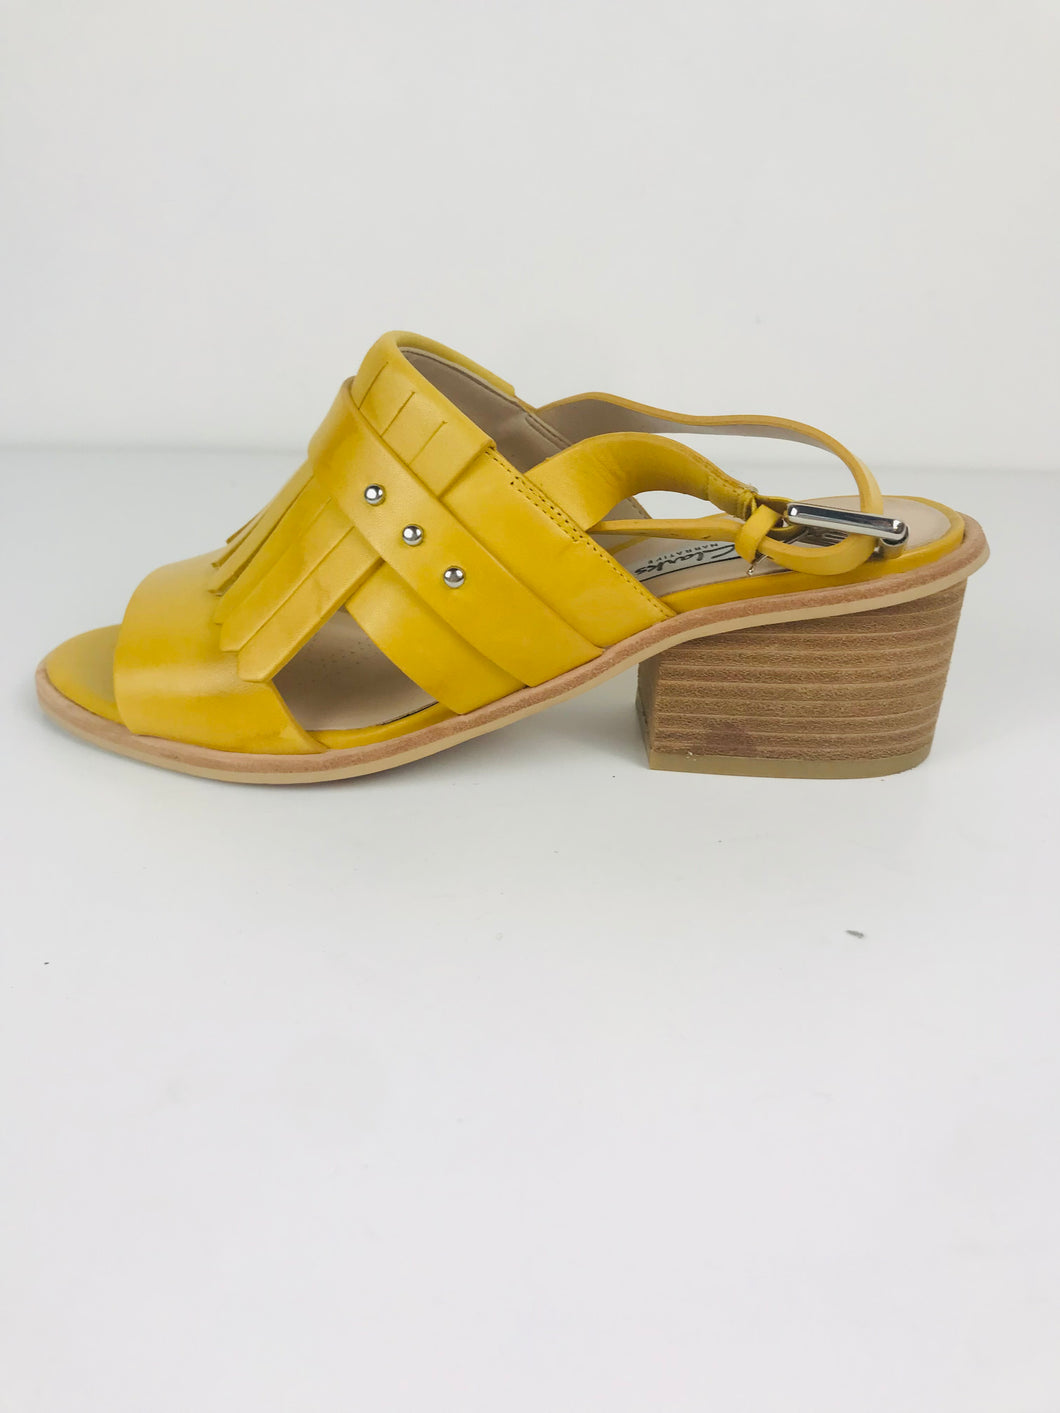 Clarks Women's Heeled Sandals | UK6 | Yellow